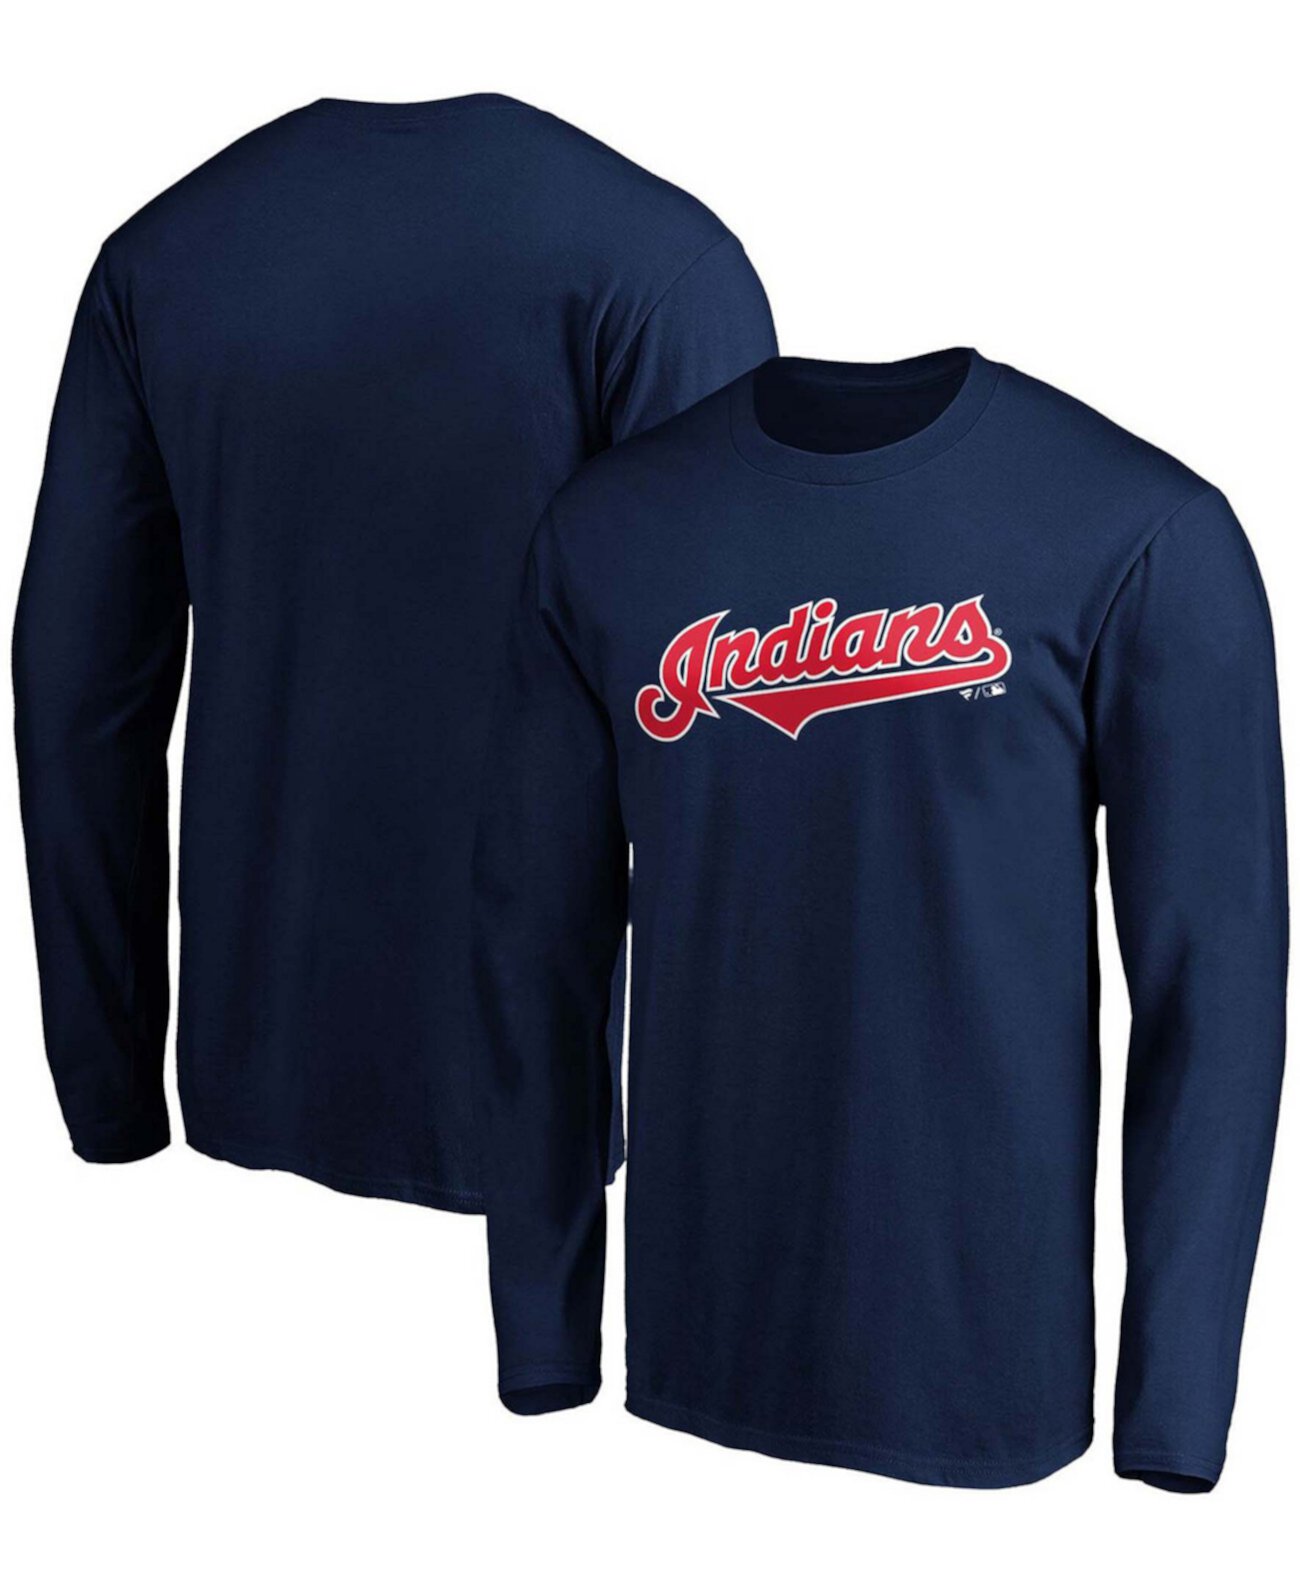 Мужская футболка с длинным рукавом с надписью Navy Cleveland Indians Official Wordmark Fanatics